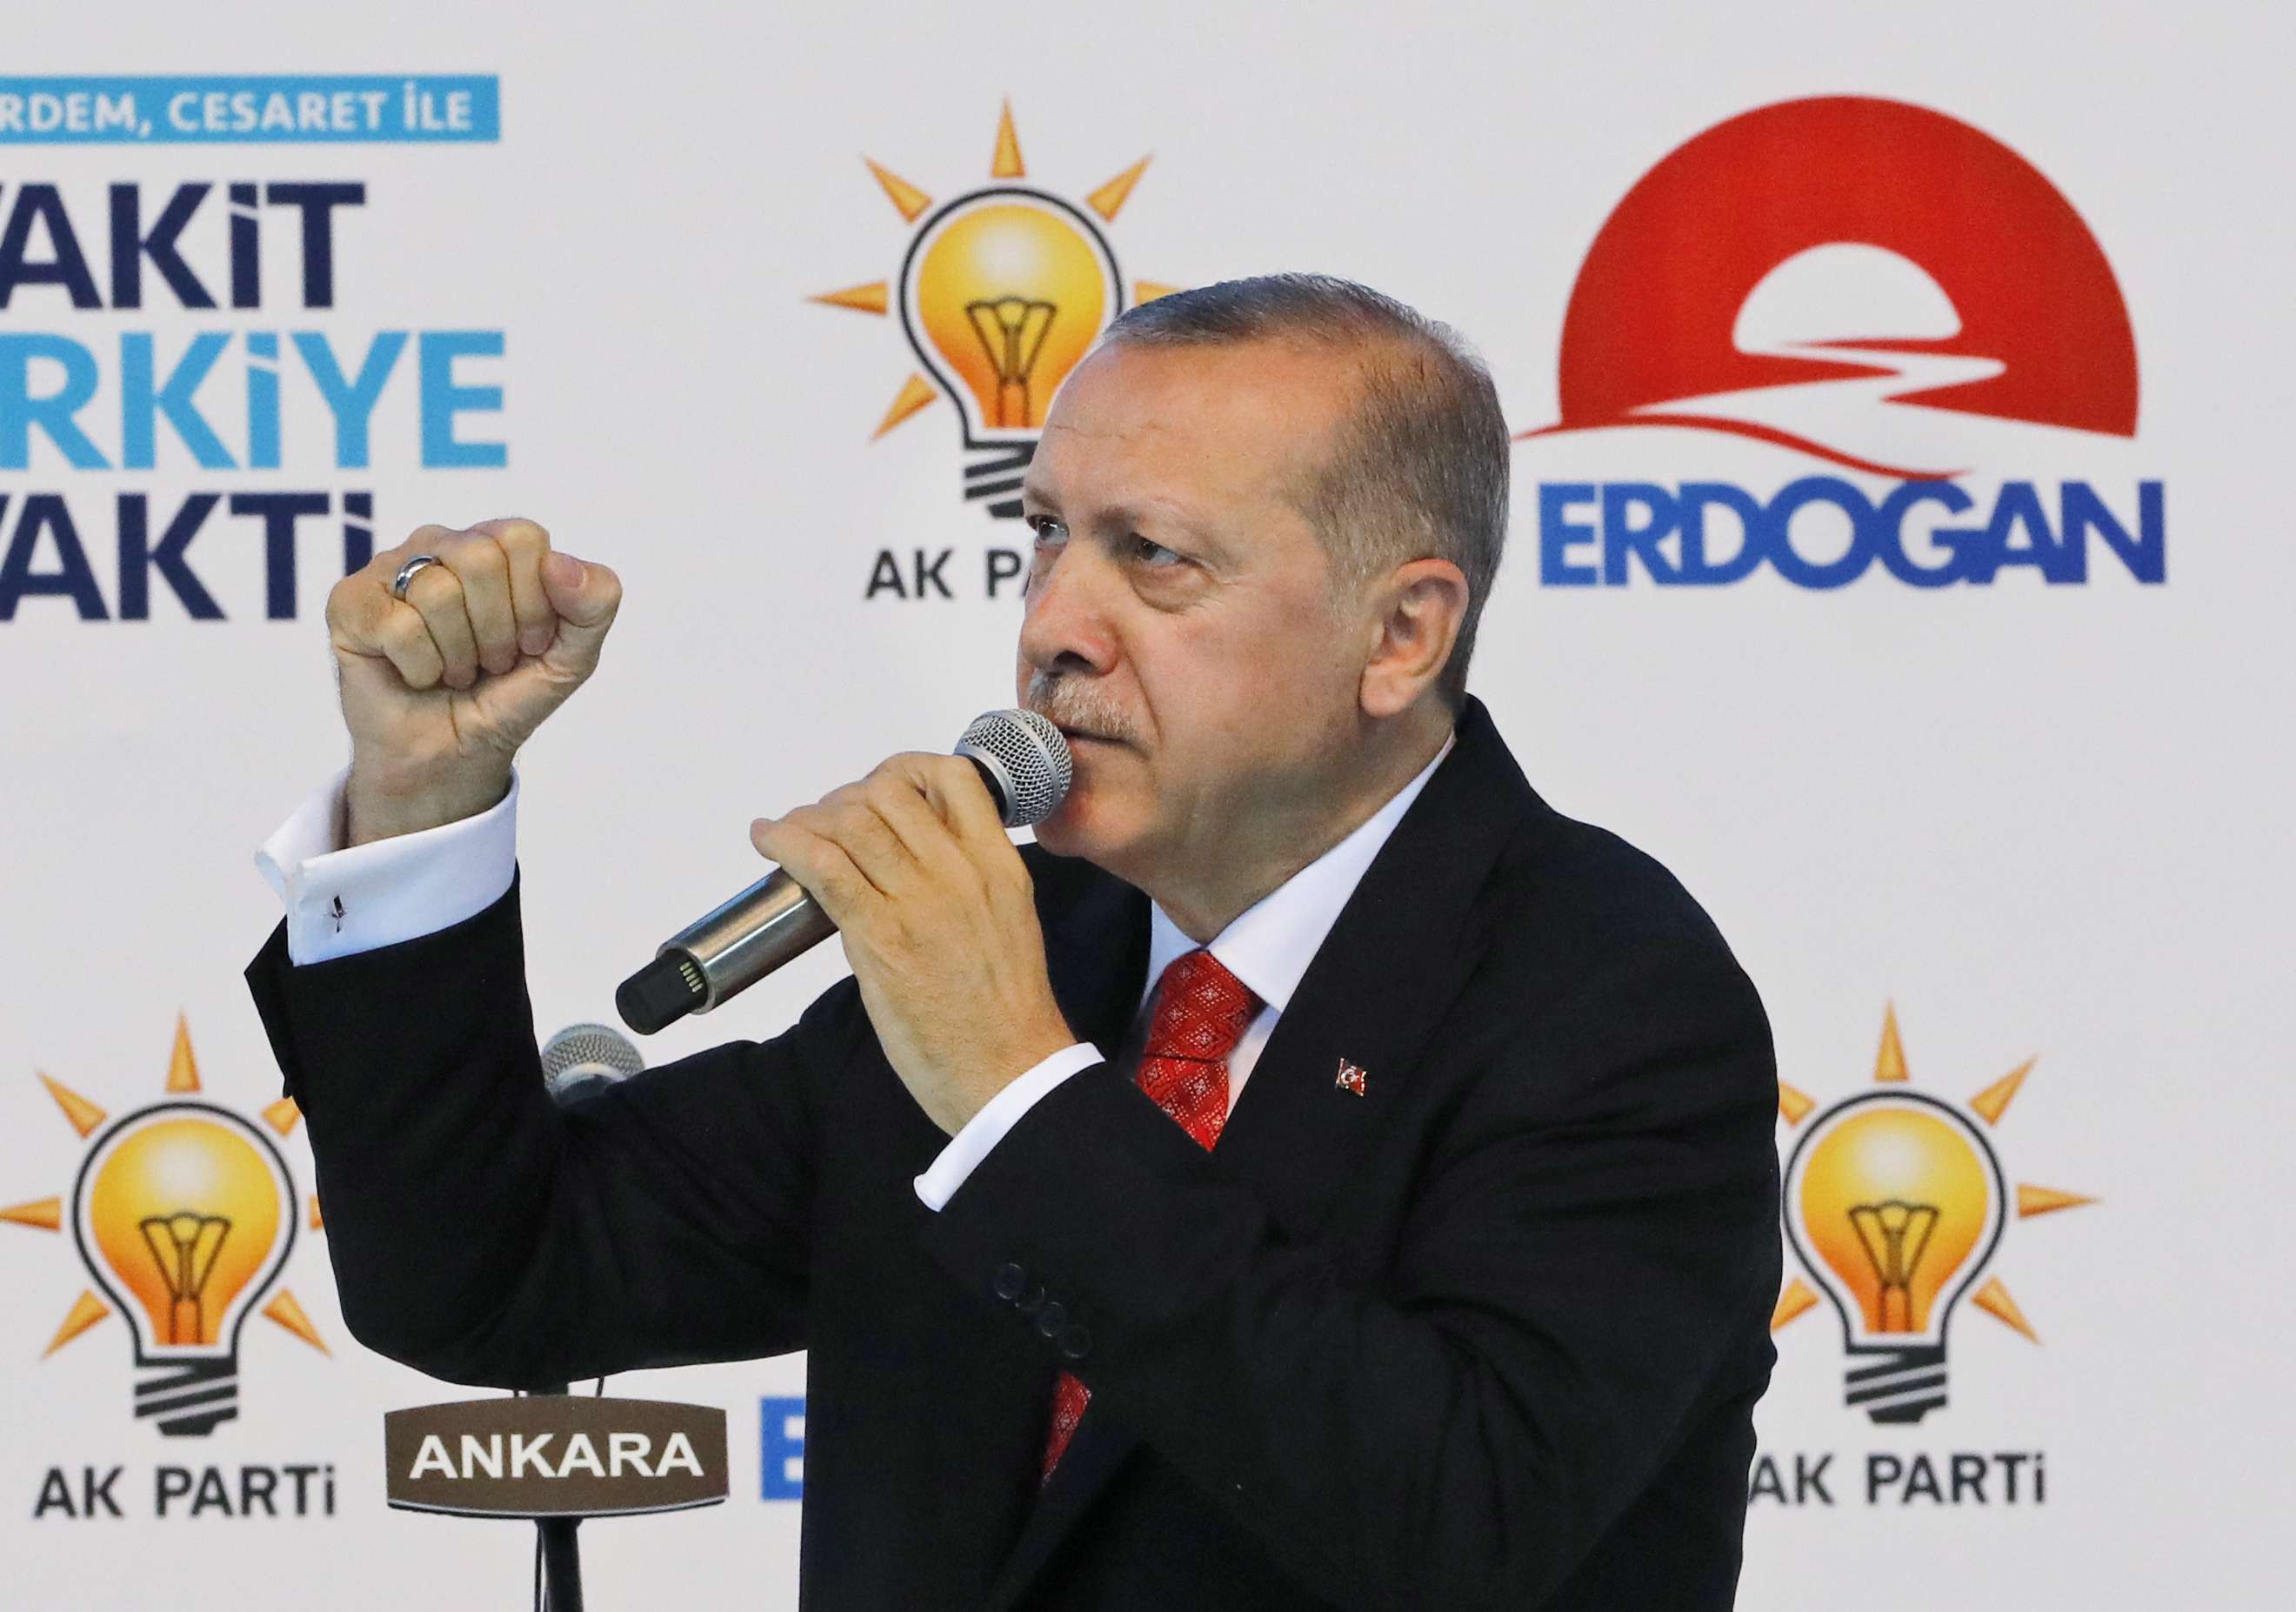 استخدام كافة الحيل لضمان فوز أردوغان